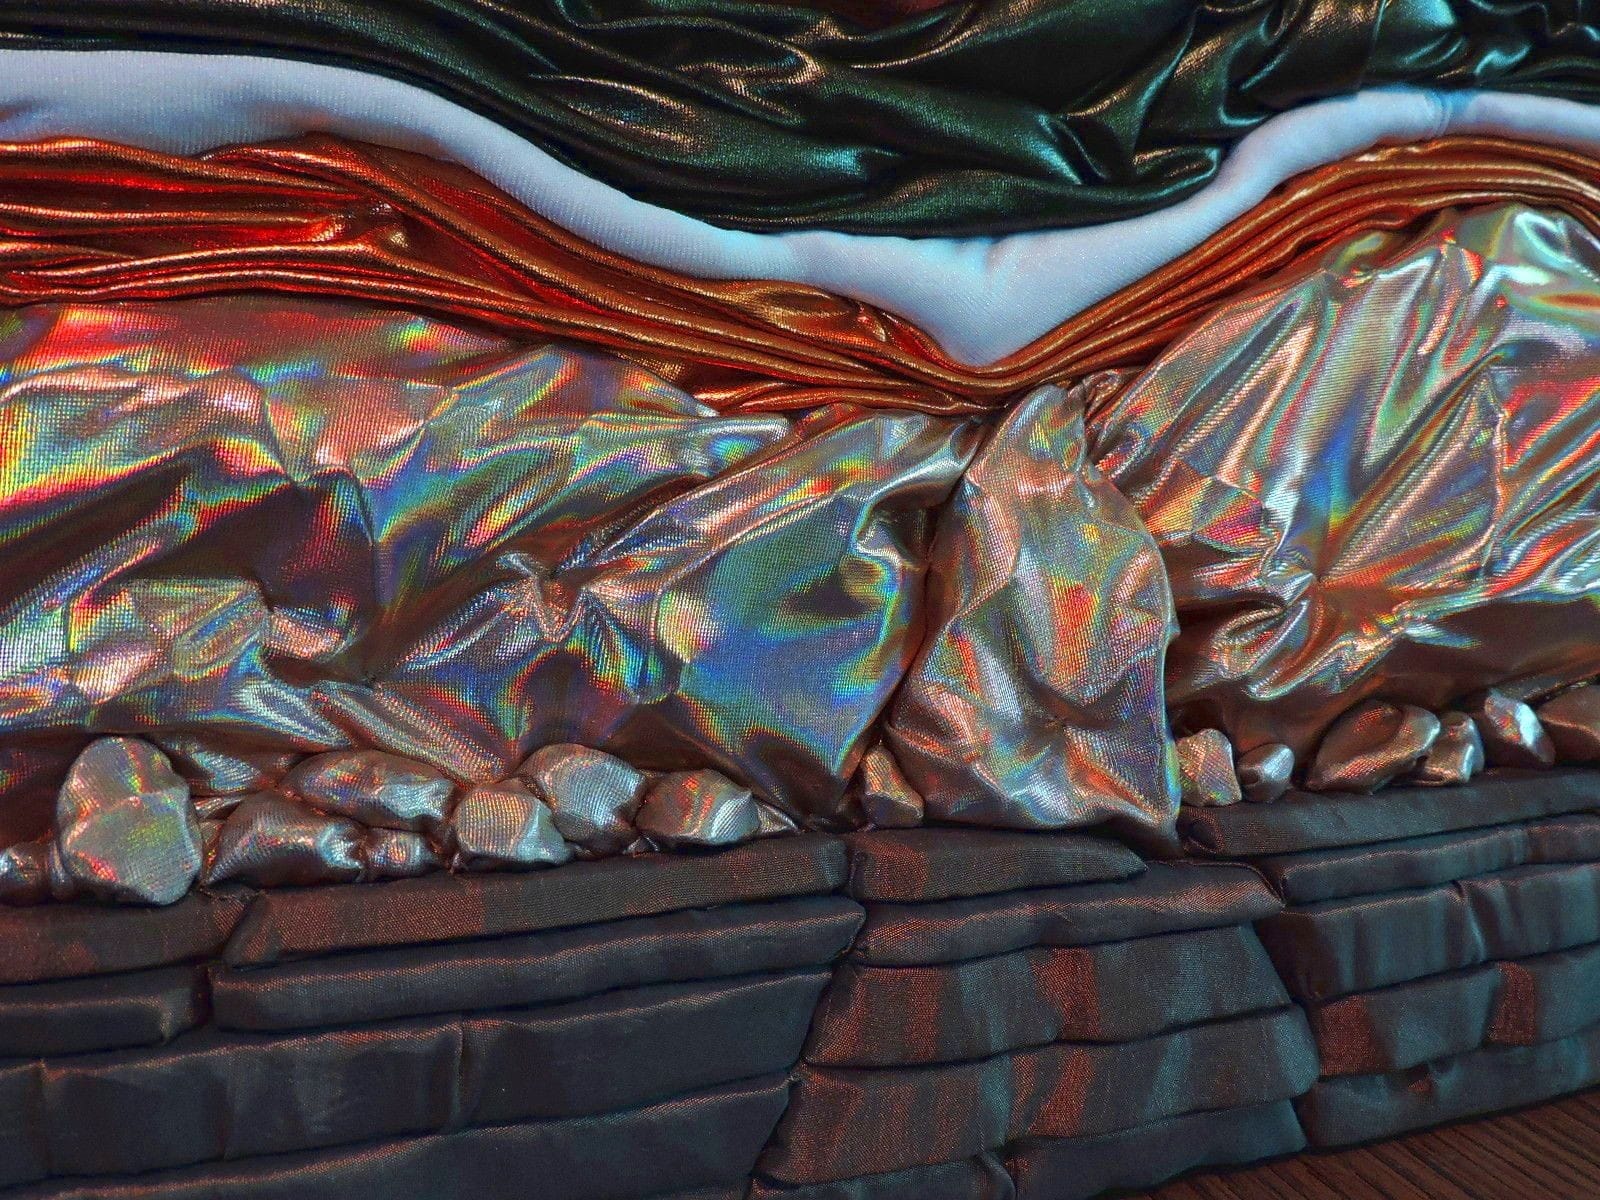 Details of "Deep Opal" by Jo-Anne Sullivan